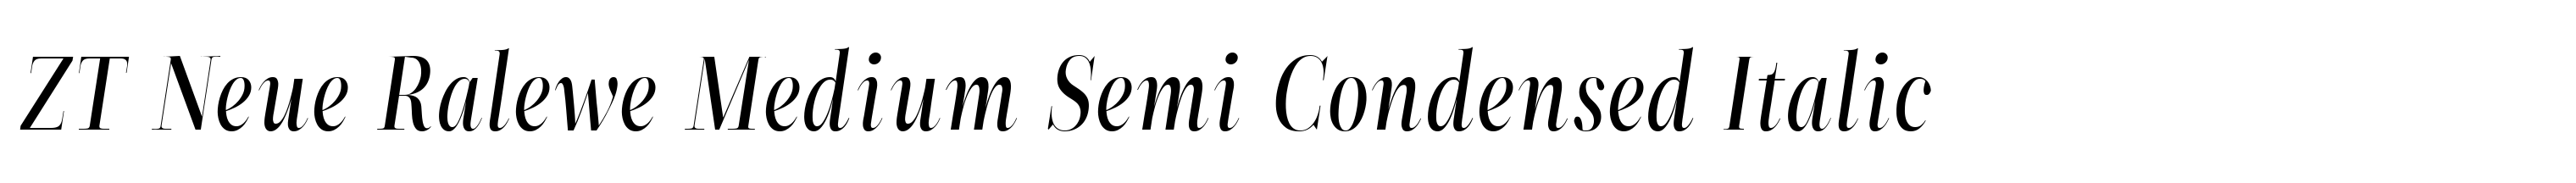 ZT Neue Ralewe Medium Semi Condensed Italic